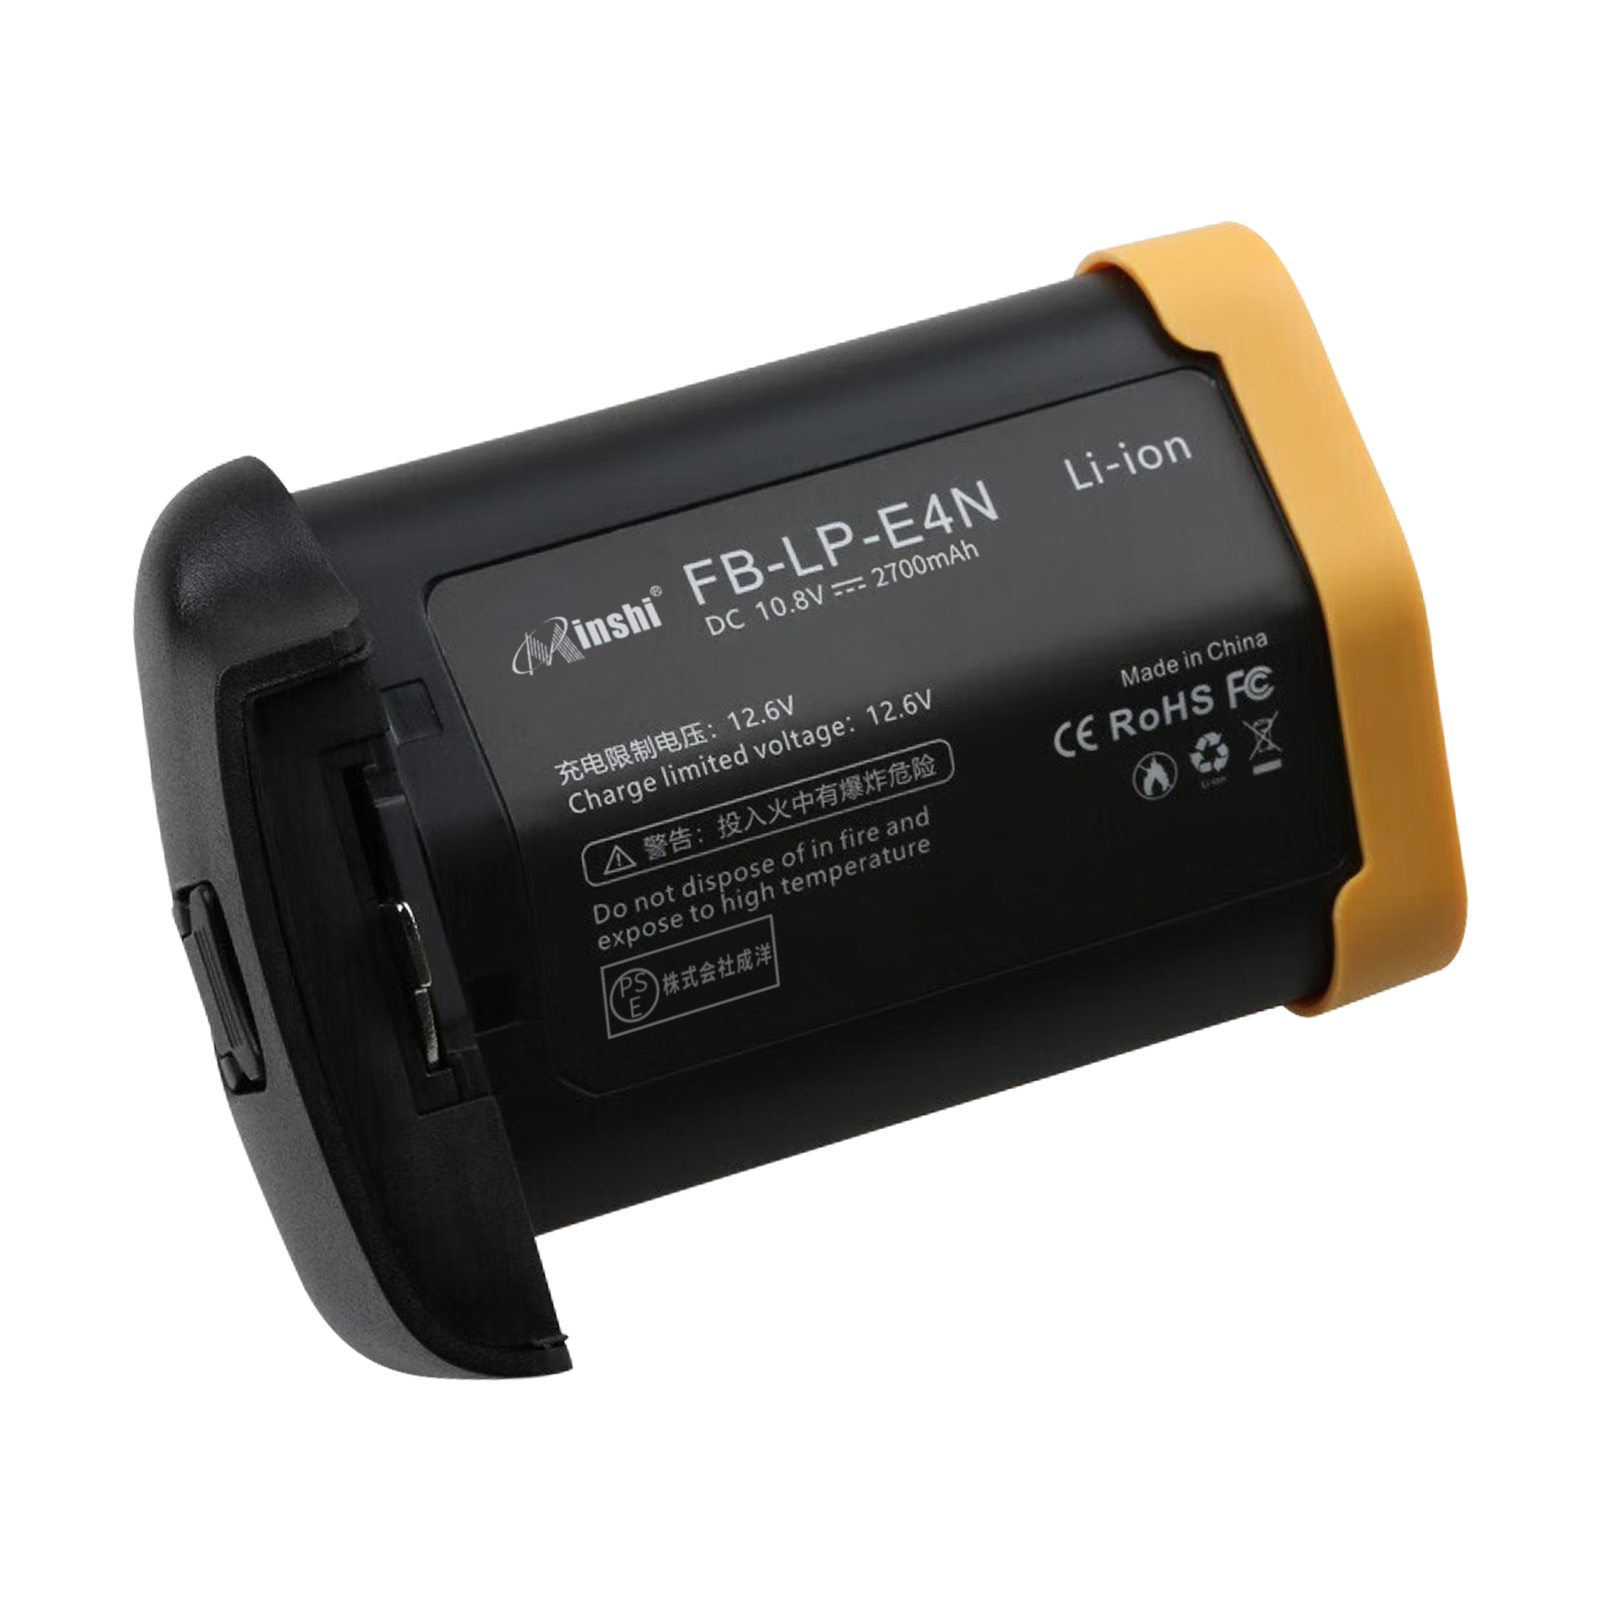 【1年保証】minshi CANON LP-E4N LP-E19【2700mAh 10.8V】PSE認定済 高品質交換用バッテリー